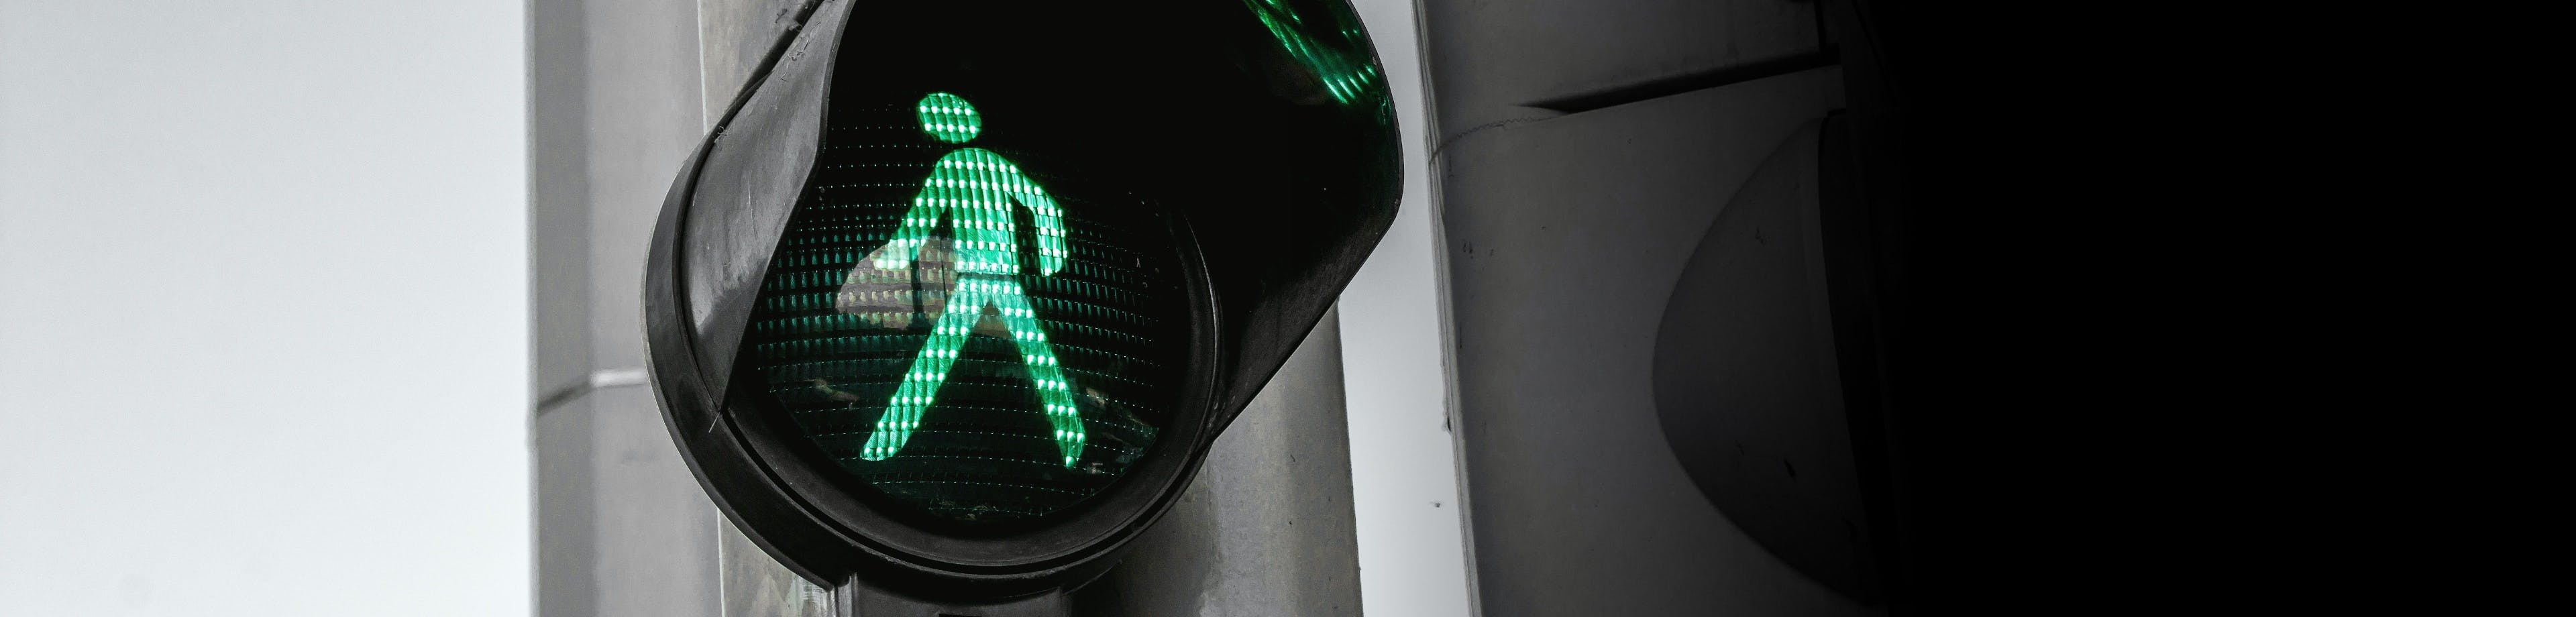 Voetgangersstoplicht dat op groen staat